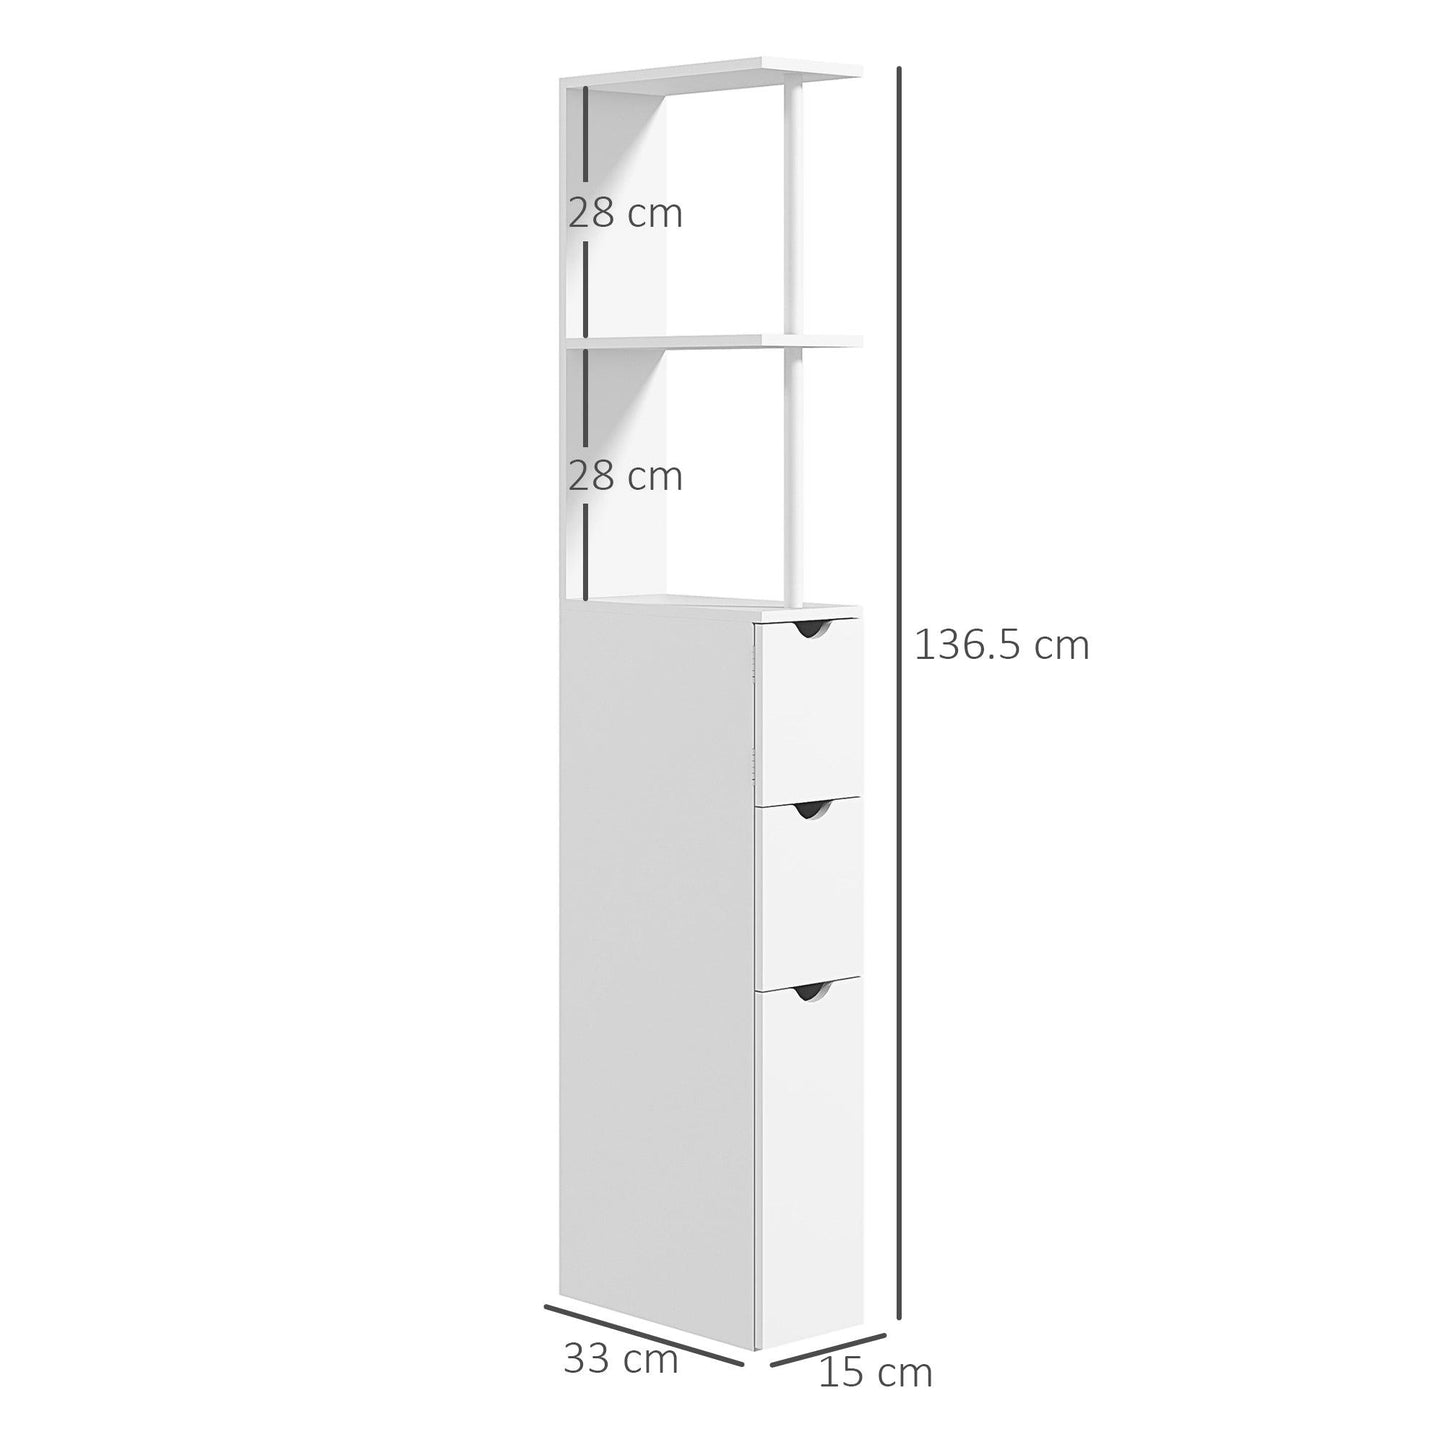 Kleankin Slim Bathroom Storage Cabinet, White - ALL4U RETAILER LTD